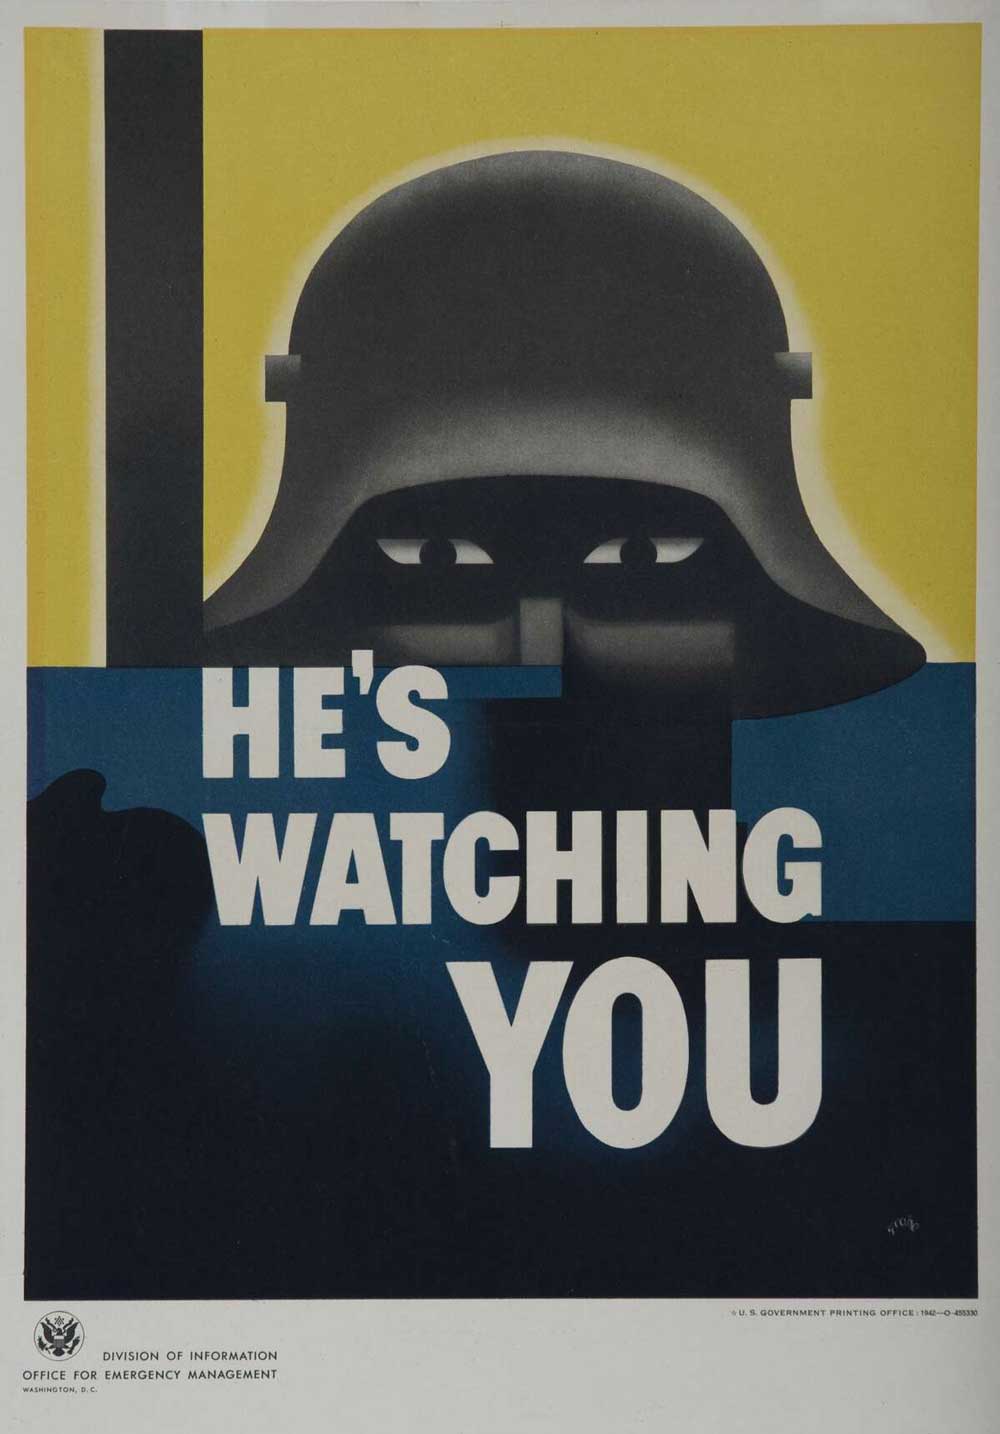 He's Watching You